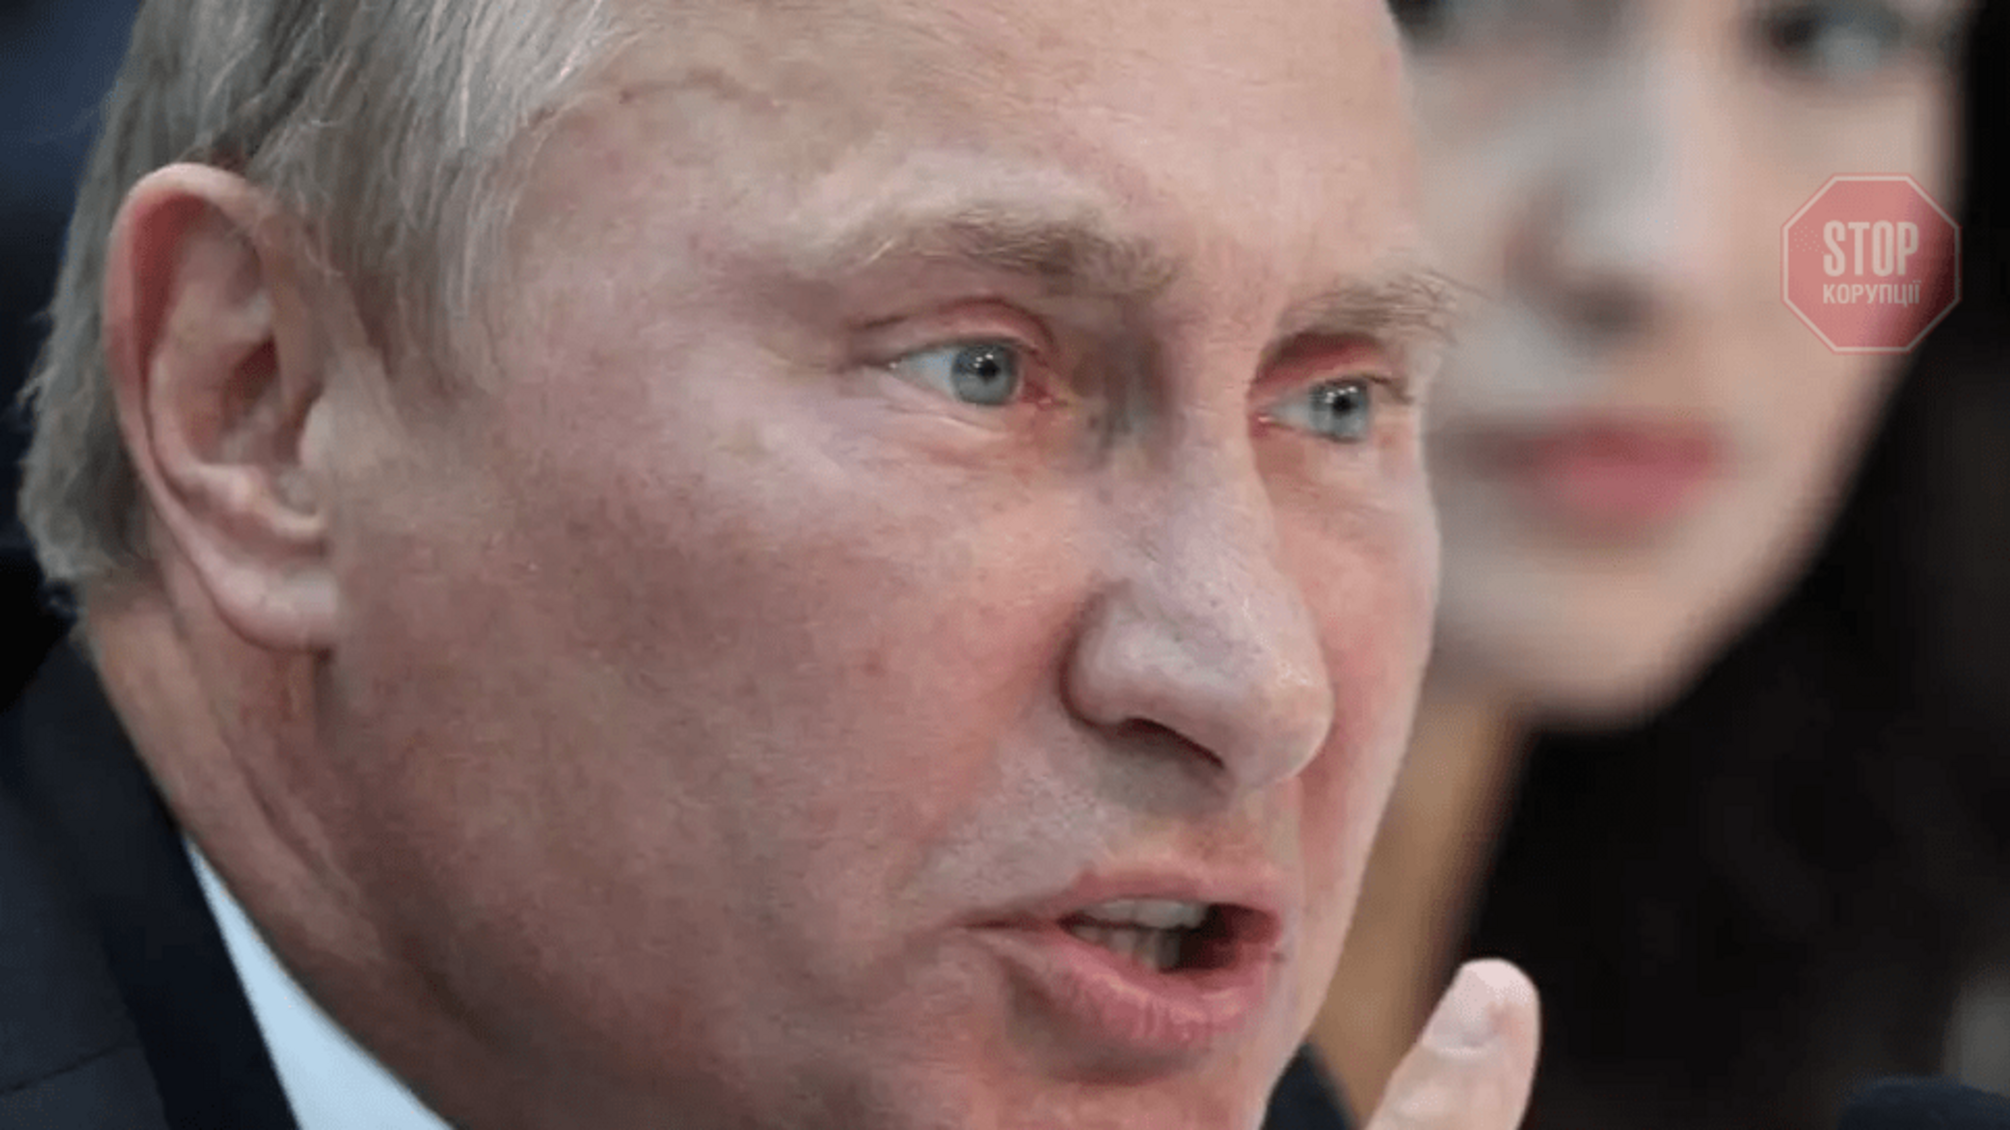 Резников: Путин своим признанием 'Л/ДНР' де-факто вывел Россию из Минских соглашений